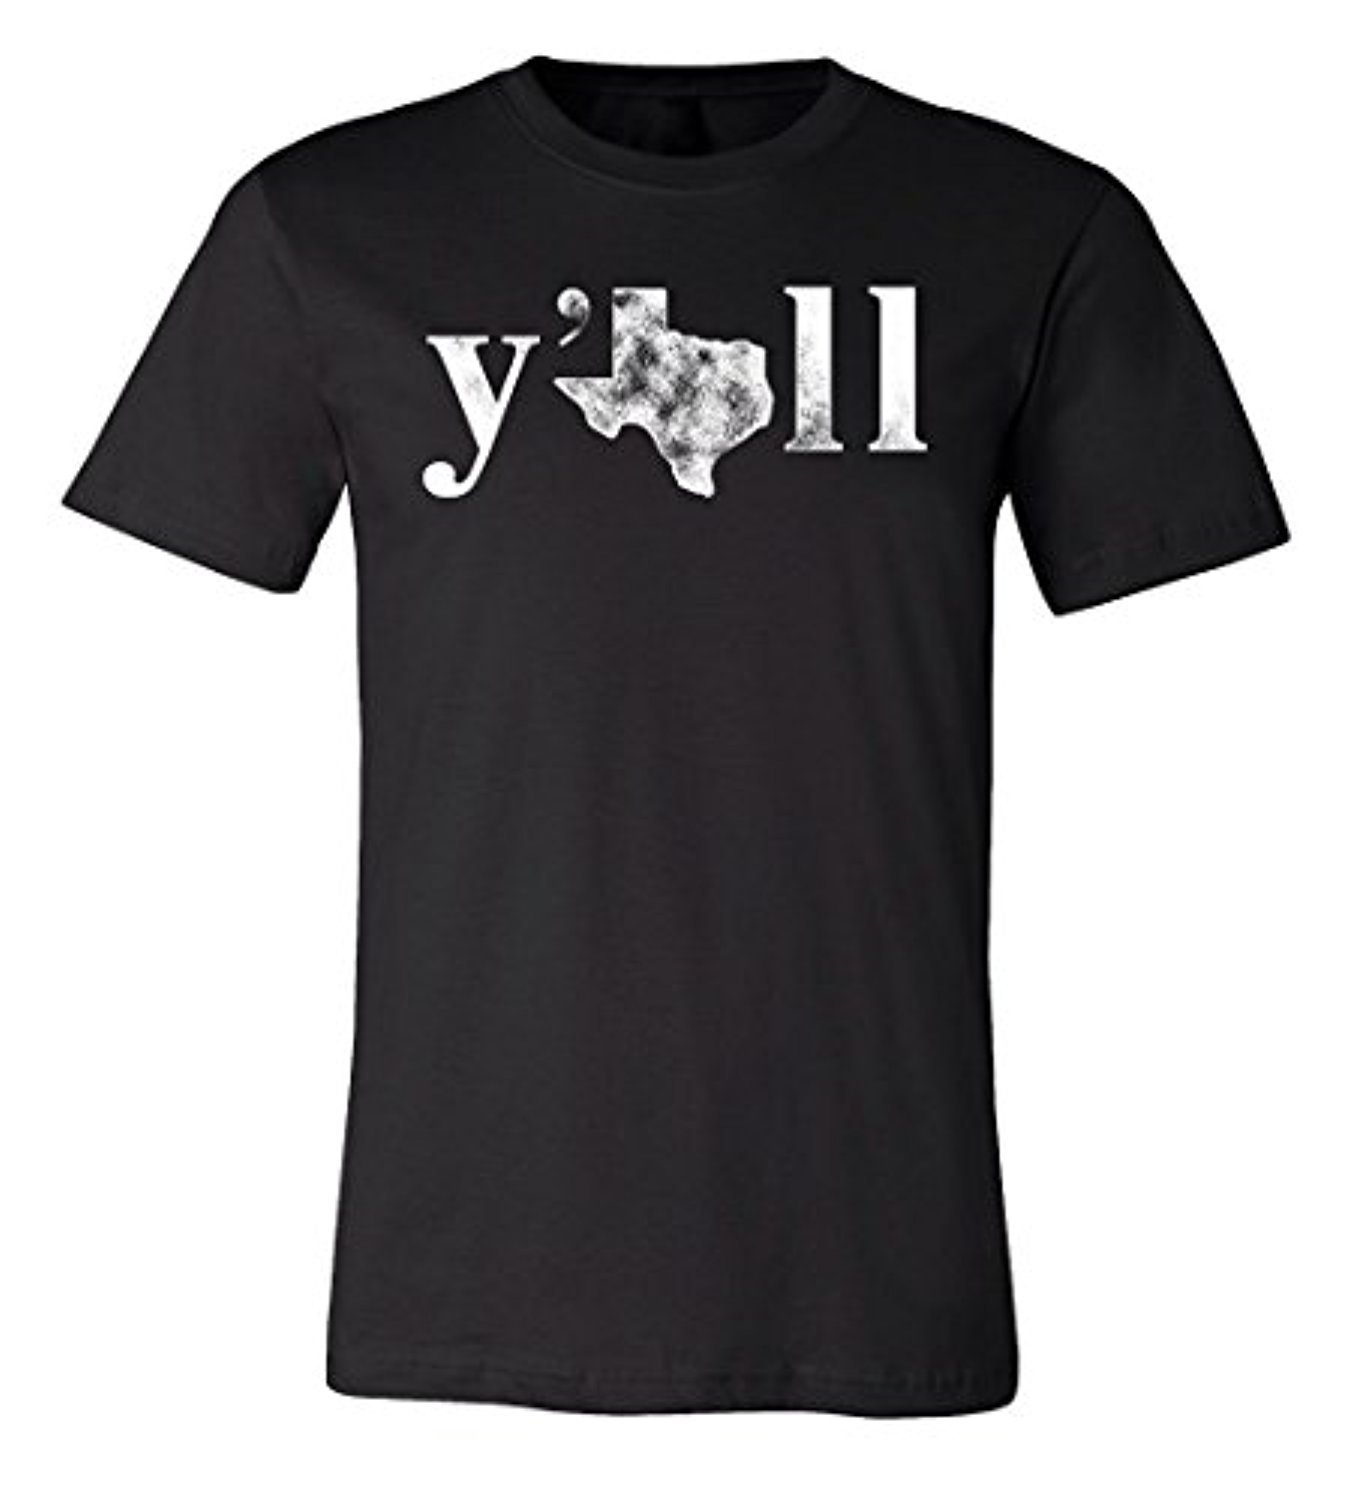 Ya'll Texas T-shirt | State of Texas Tee | eBay